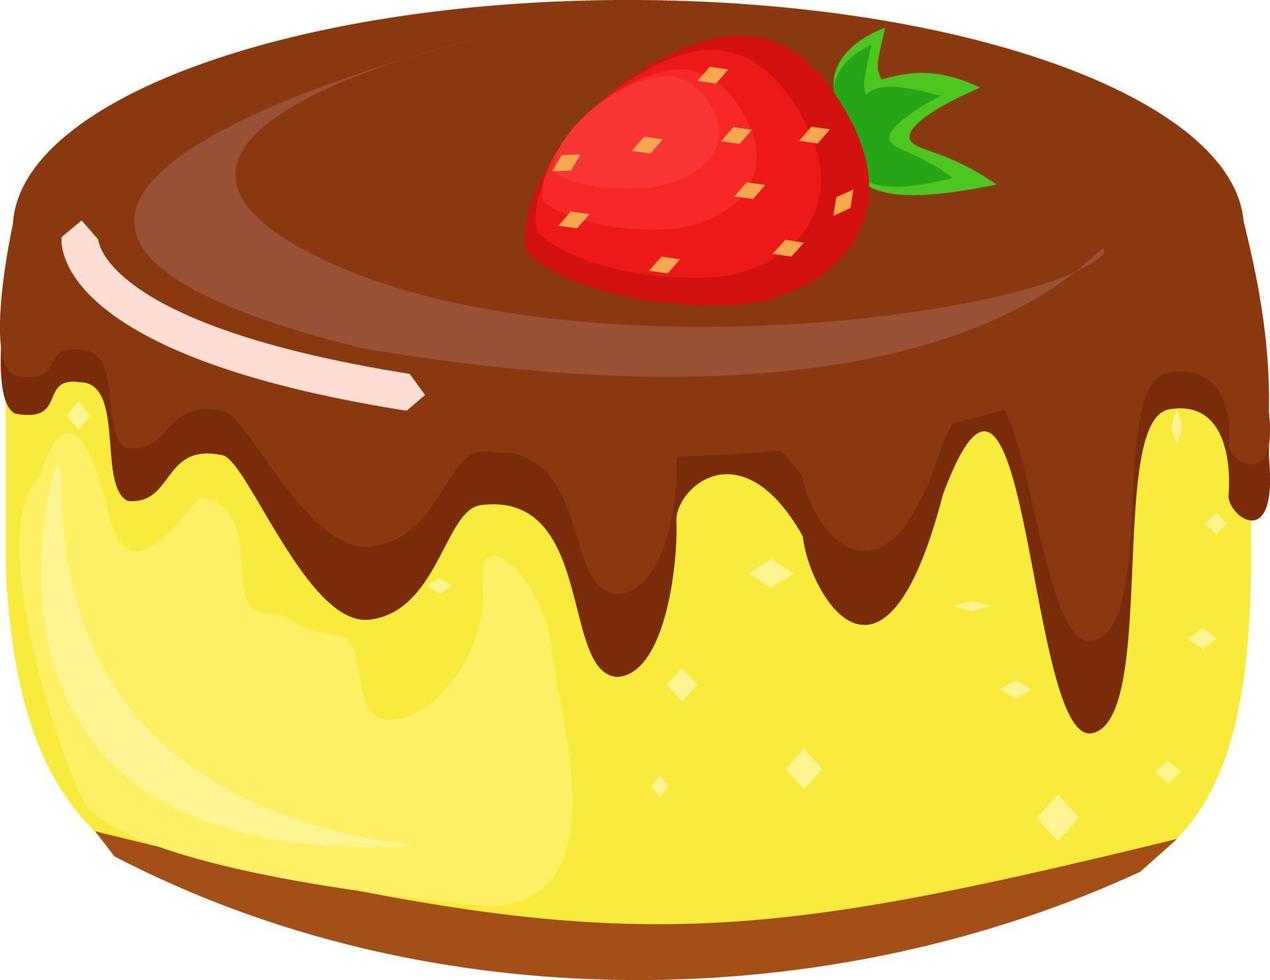 bolo com morango, ilustração, vetor em fundo branco